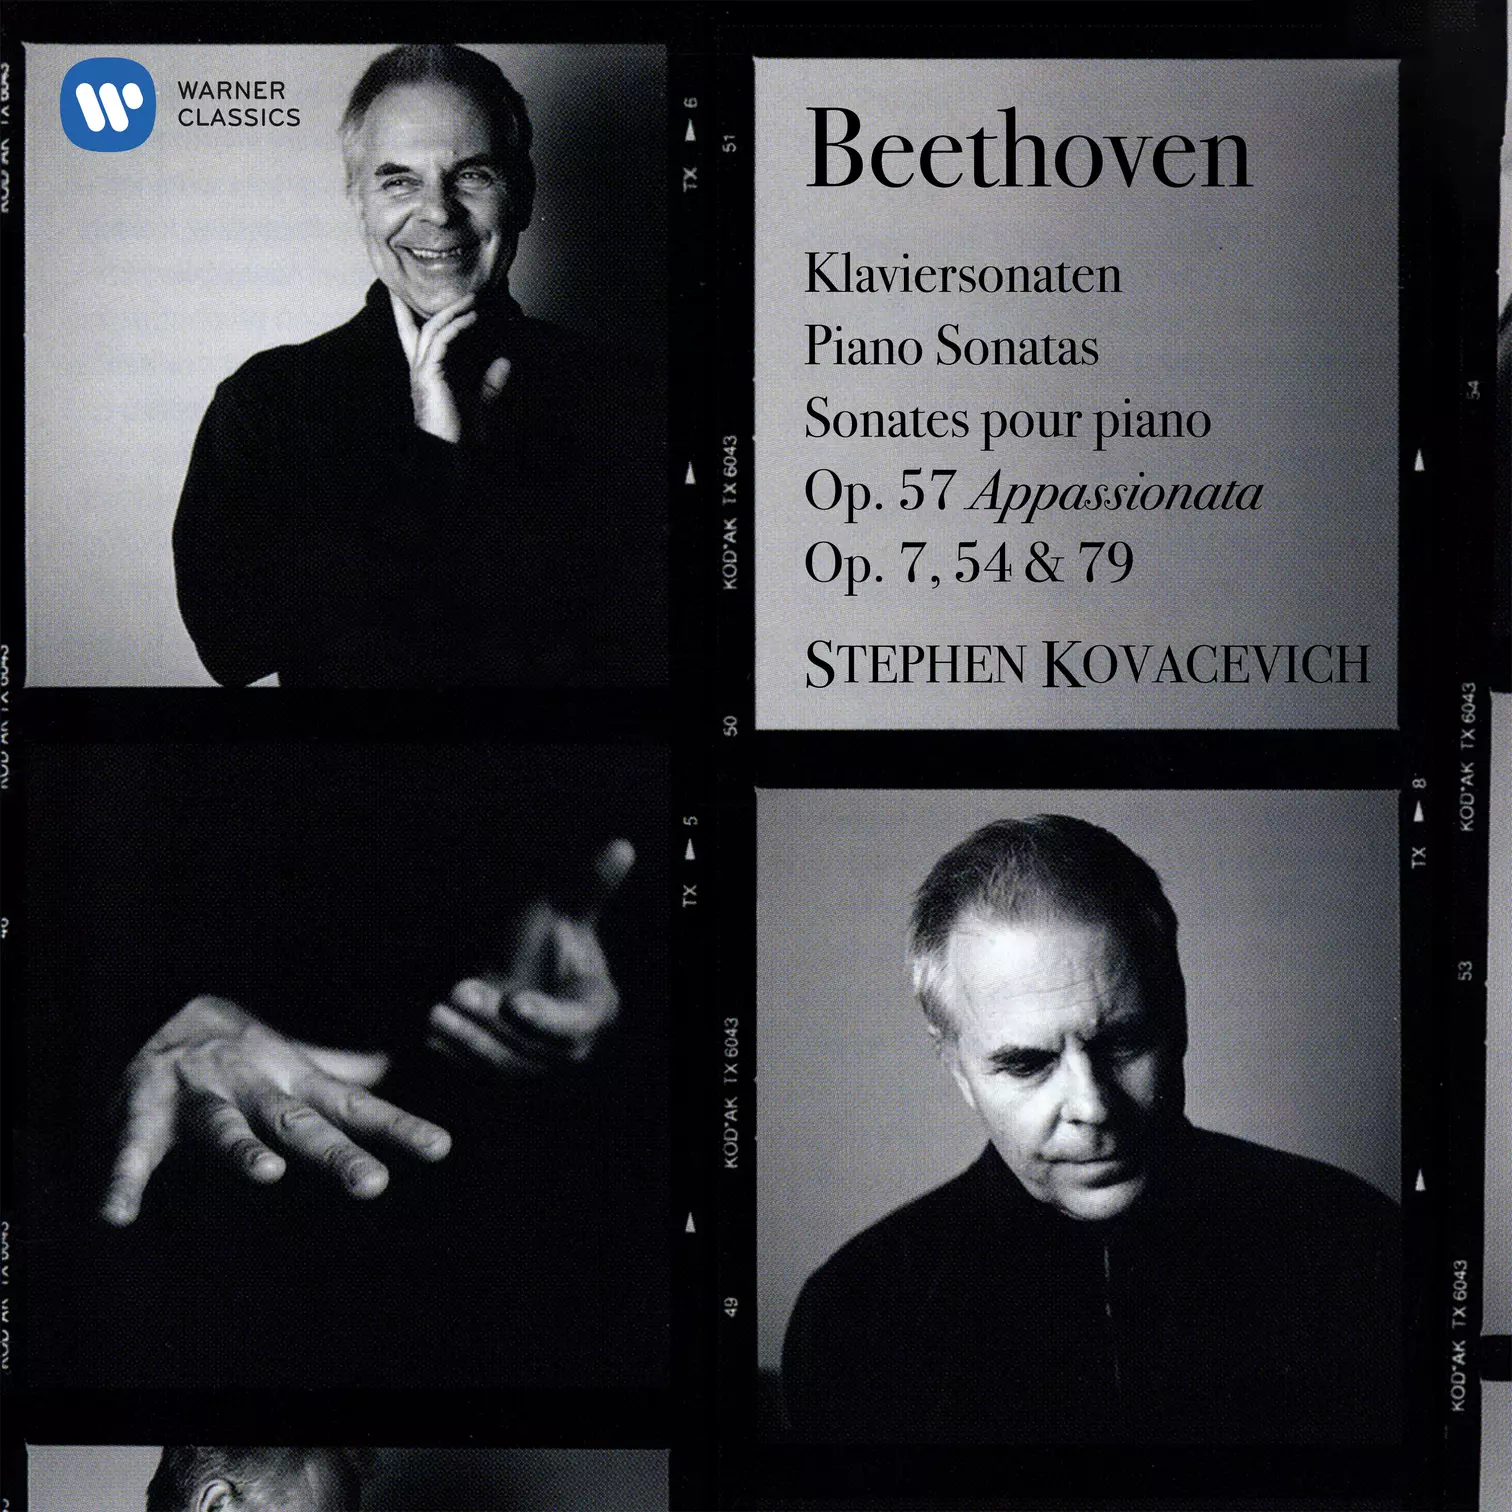 Beethoven: Piano Sonatas Nos. 4, 22, 23 "Appassionata" & 25